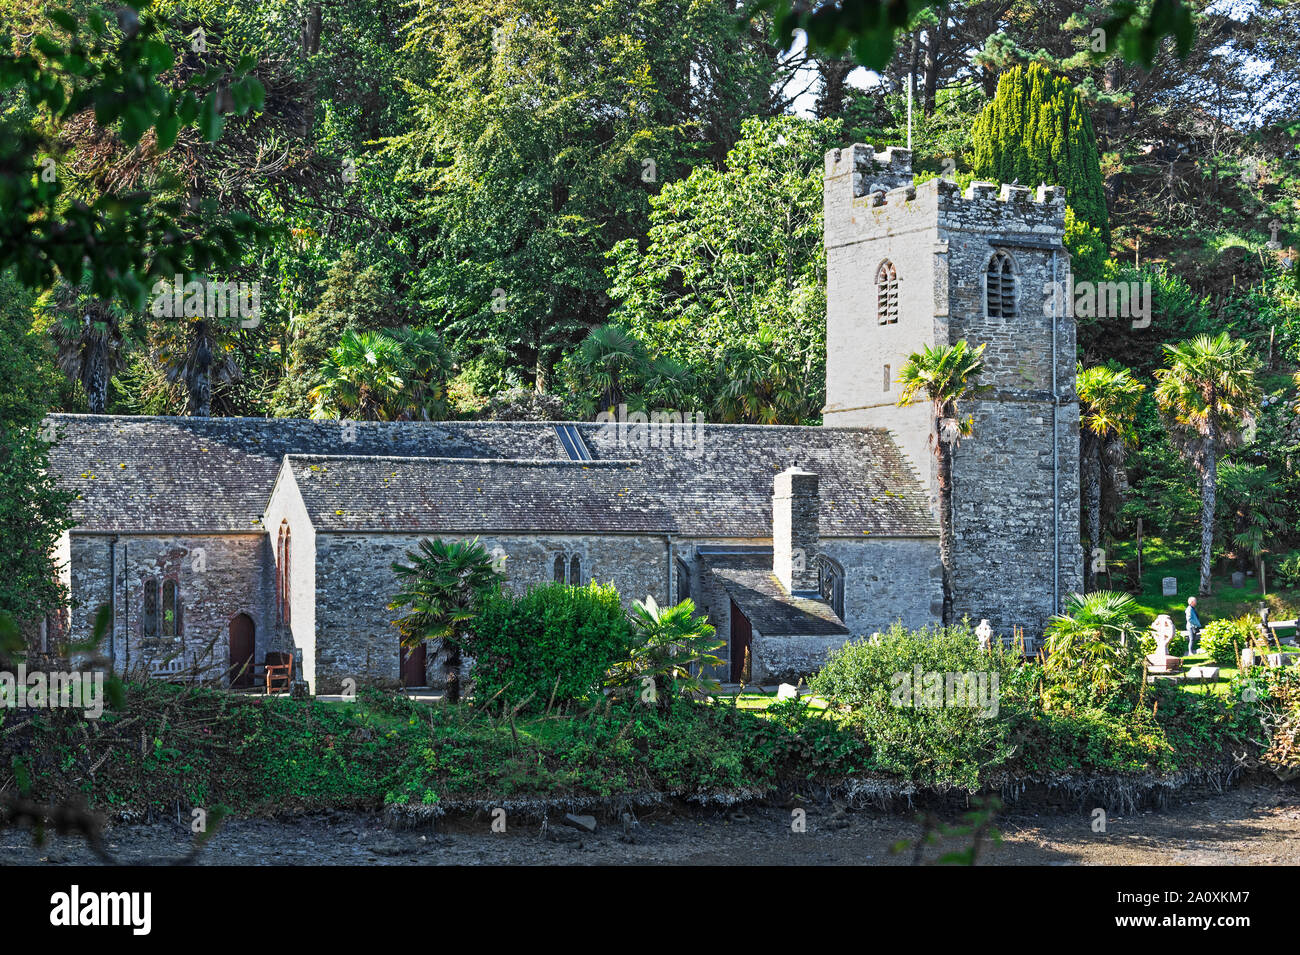 Im 12. Jahrhundert, nur Kirche, roseland in Cornwall, England, Großbritannien, Großbritannien. Stockfoto